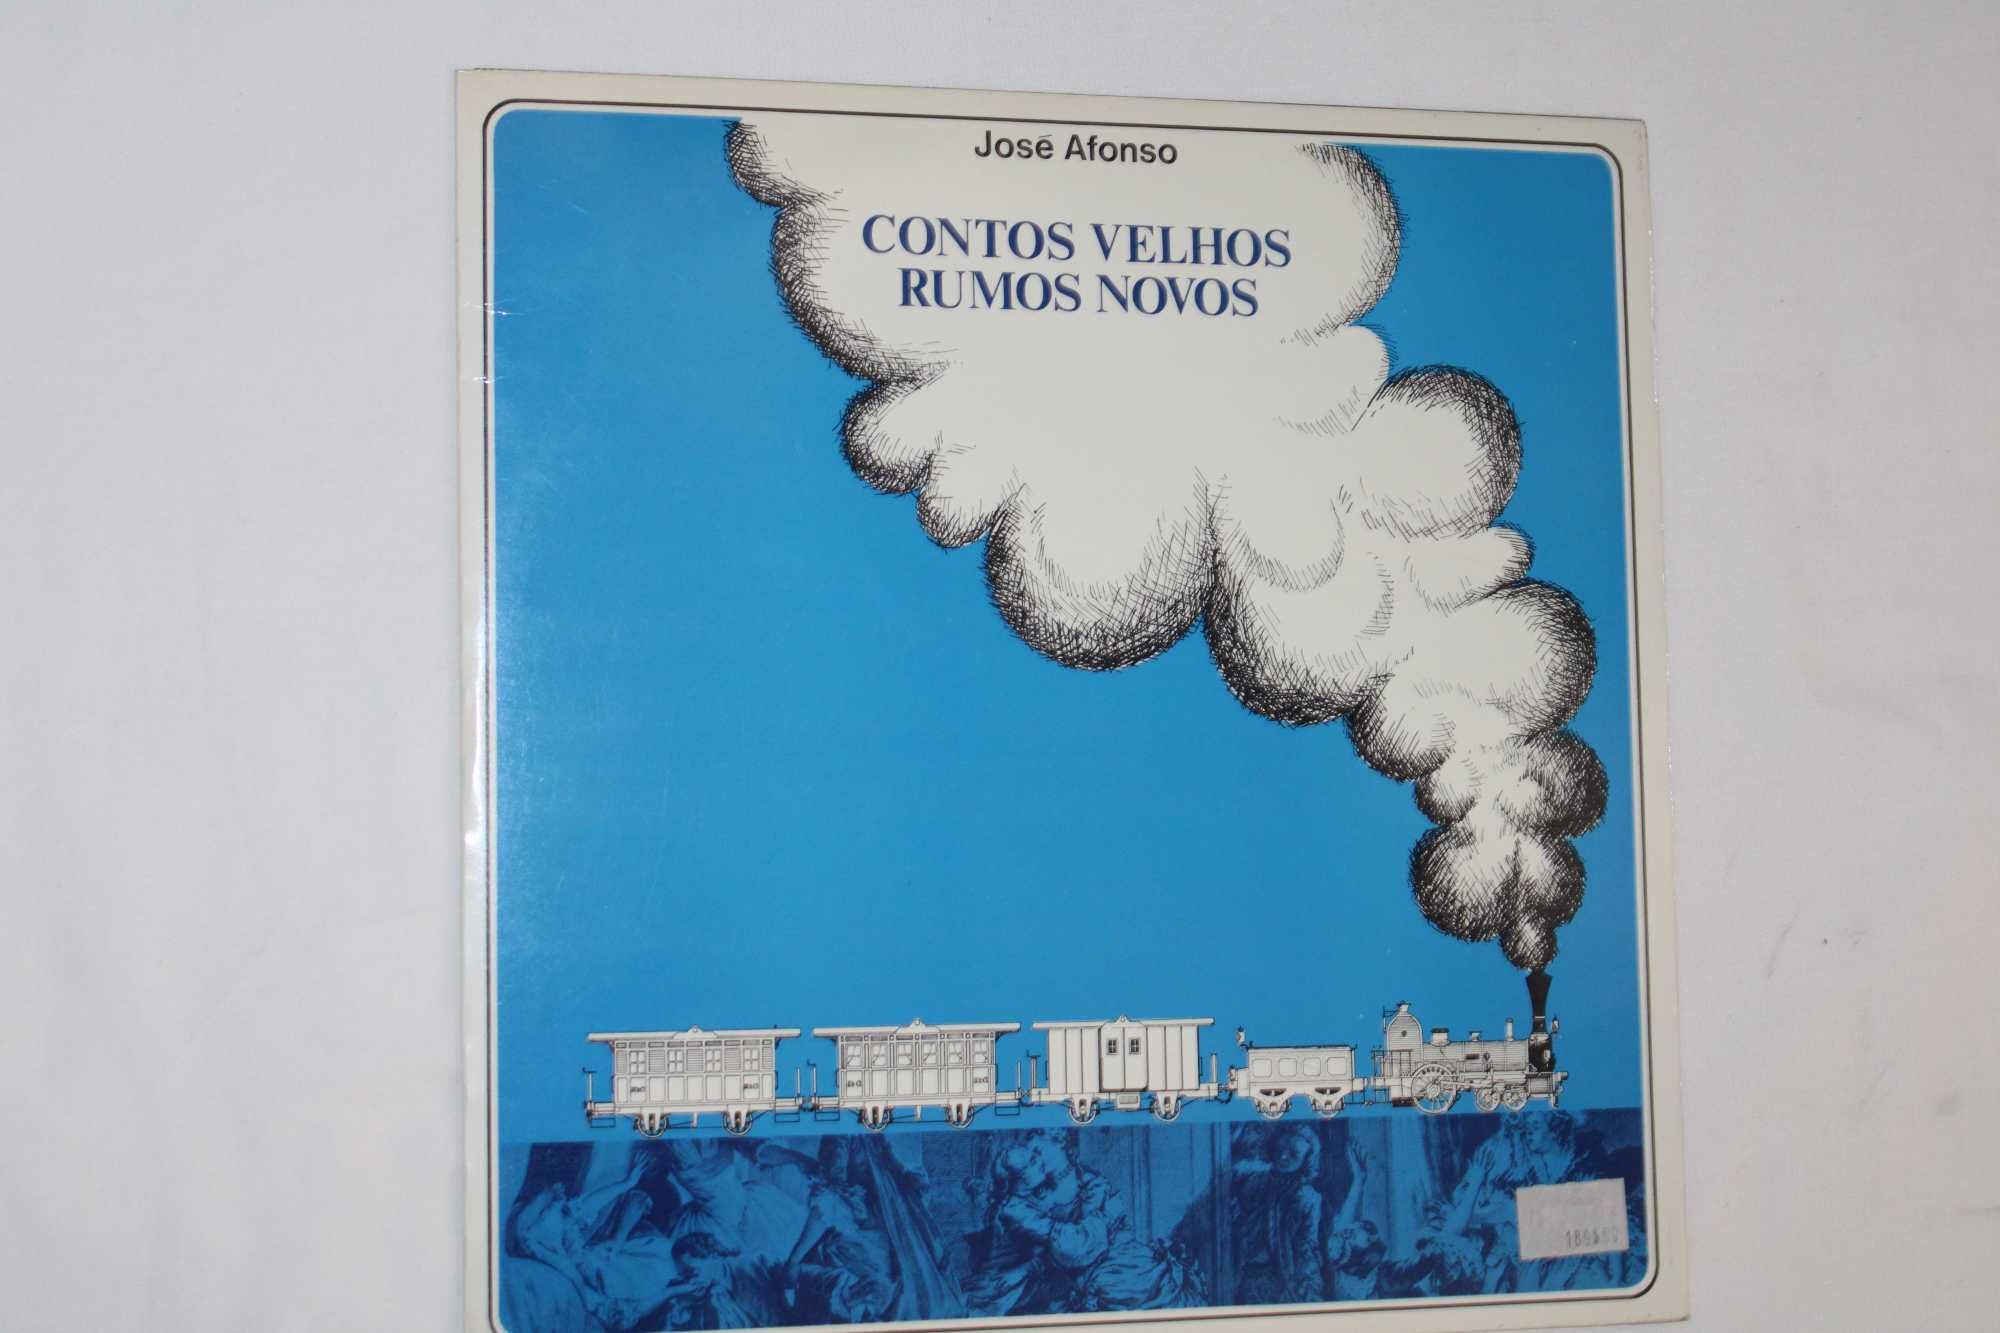 Disco José Afonso "CONTOS VELHOS RUMOS NOVOS" LP em Vinil 2ª edição